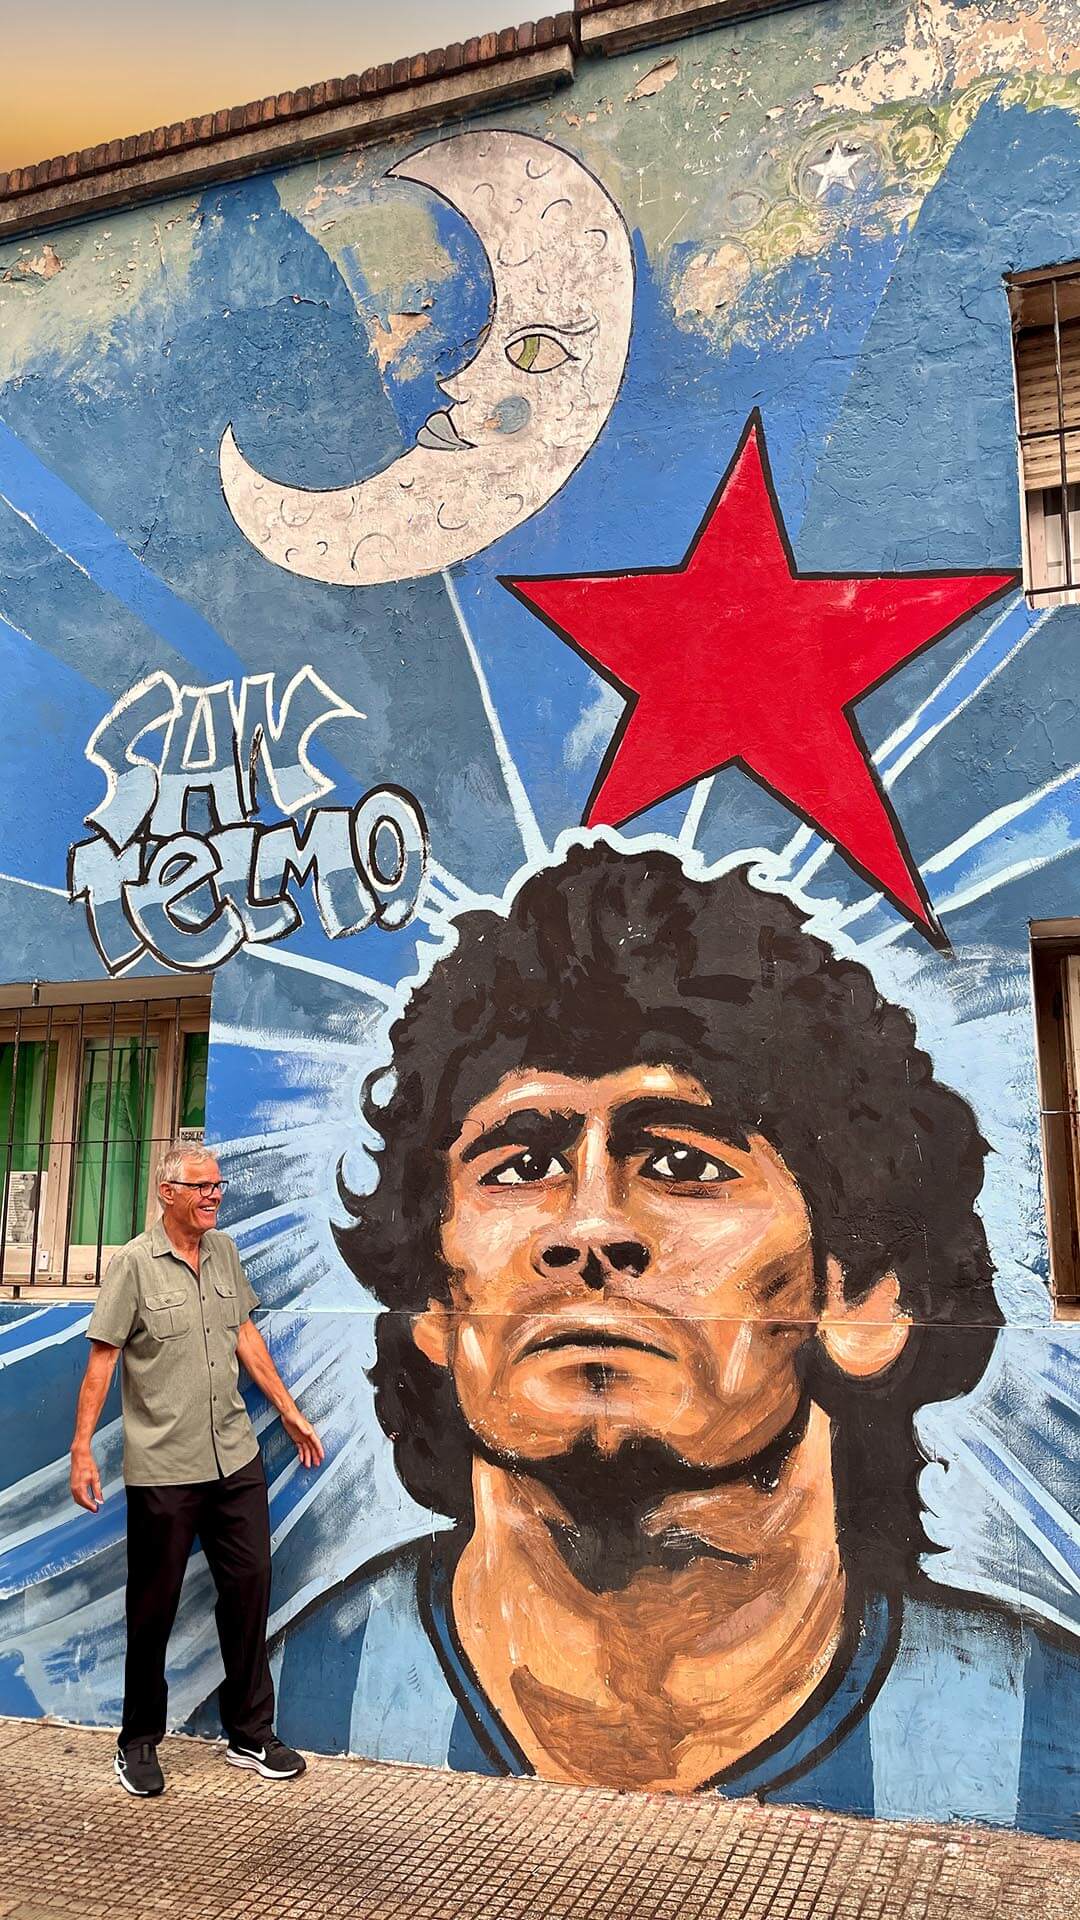 Diego Maradona - der Buenos Aires Trip